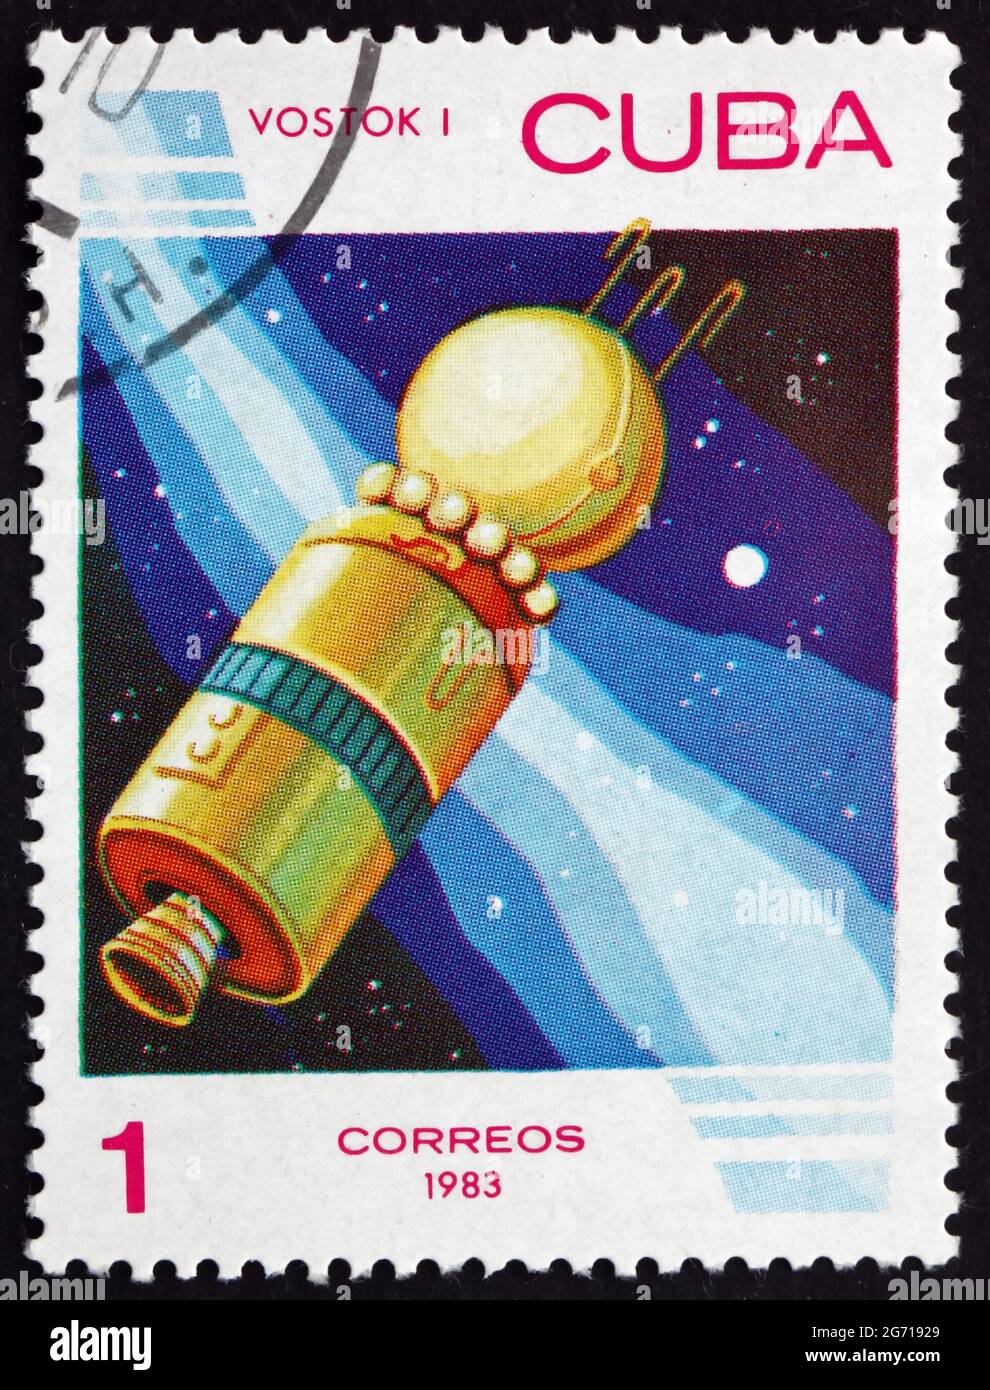 CUBA - VERS 1983 : un timbre imprimé à Cuba montre Vostok 1, le premier vol spatial humain dans l'histoire, vers 1983 Banque D'Images